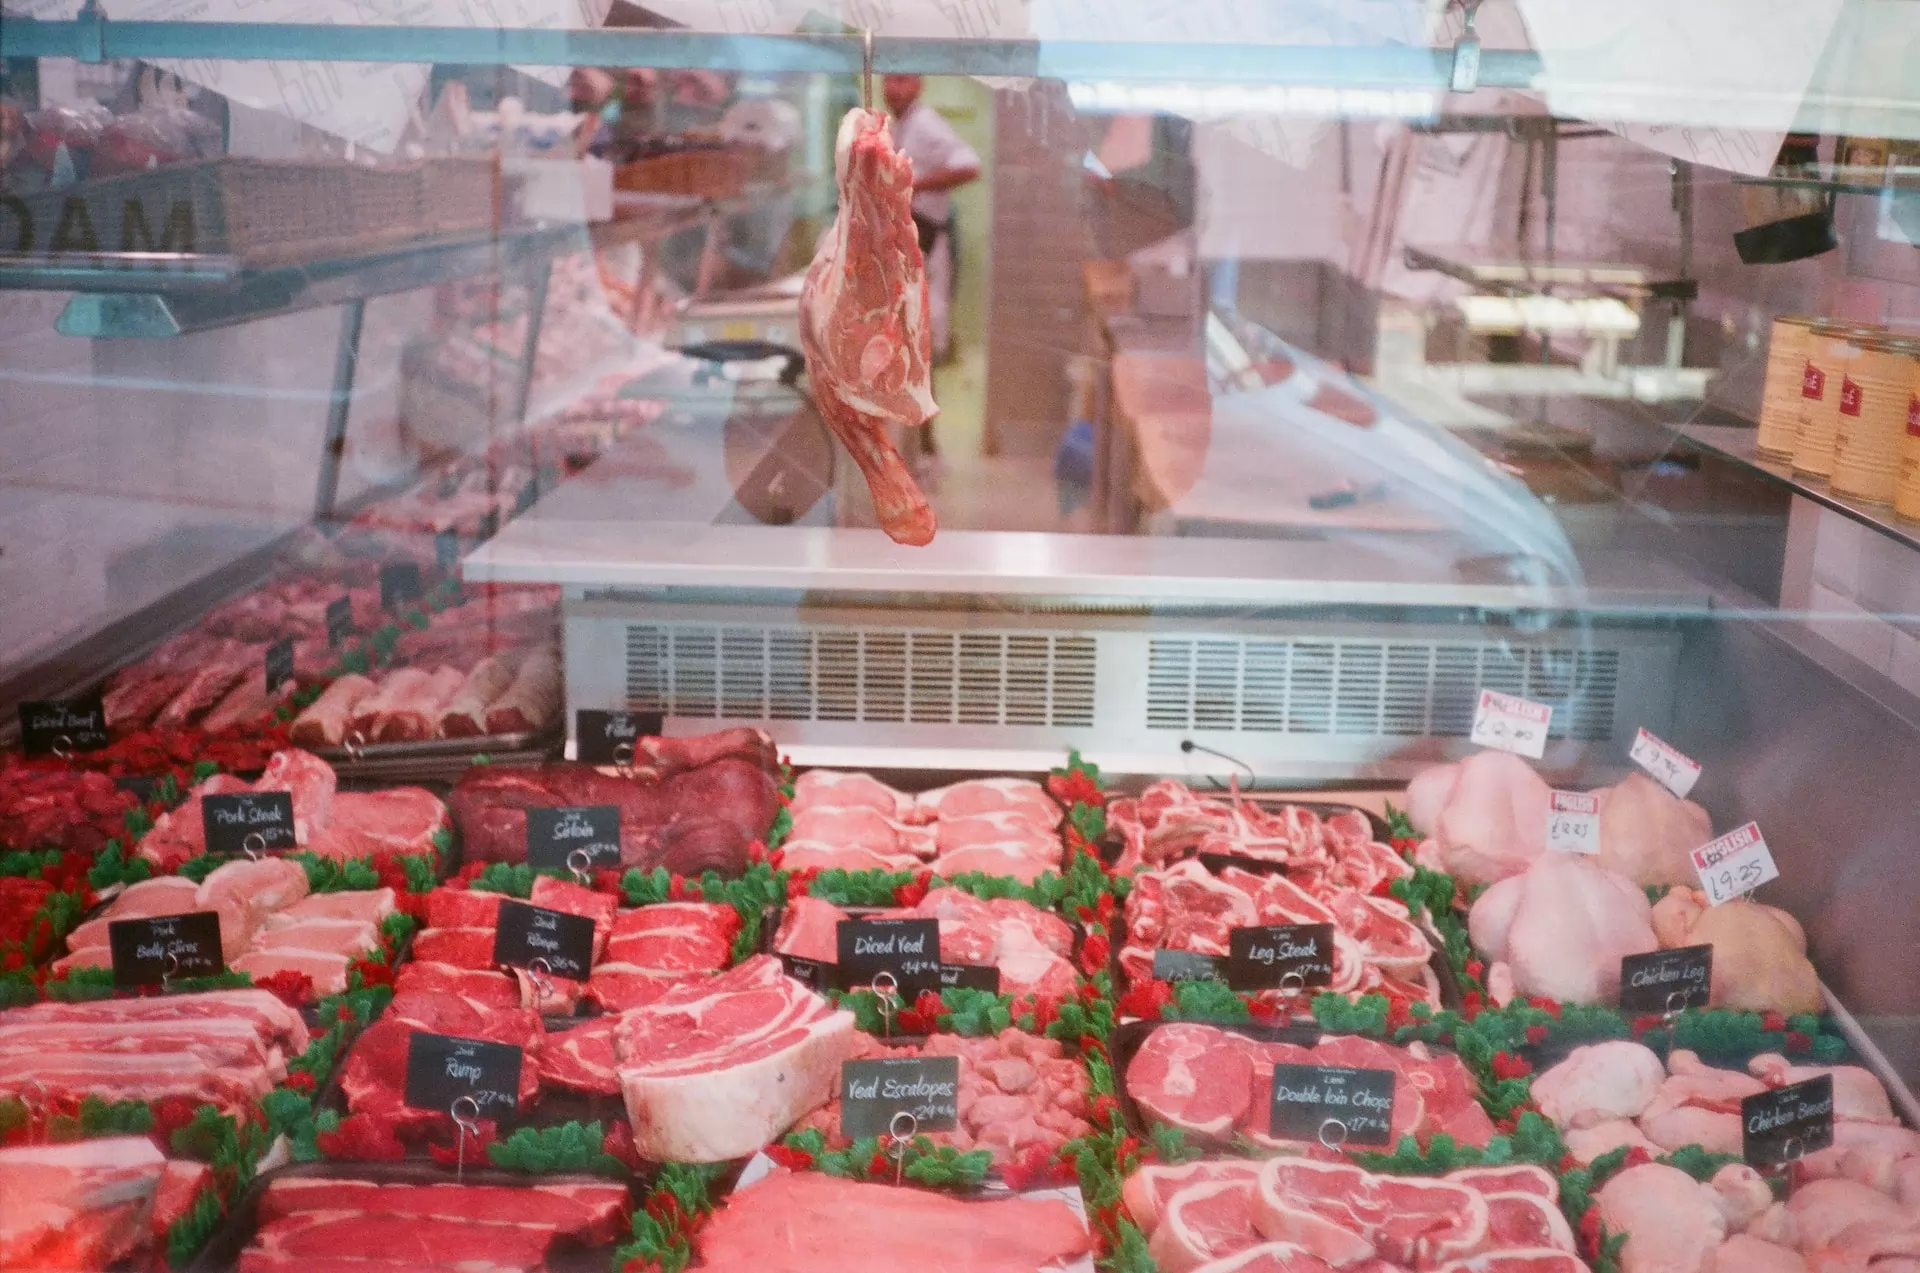 Le marché de la transformation et de la conservation de la viande